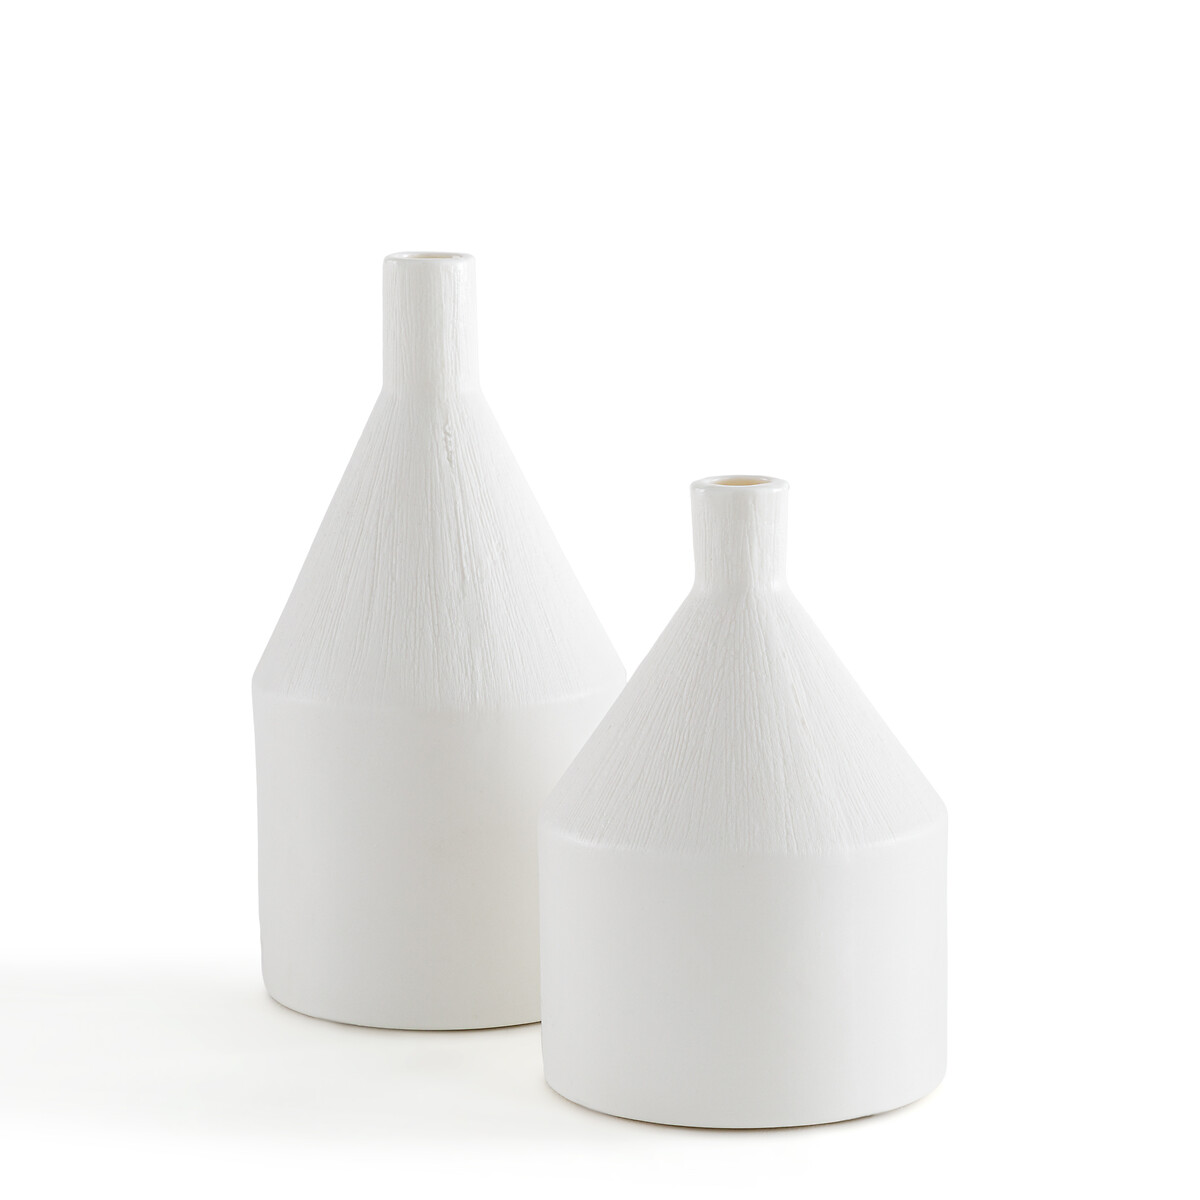 Комплект из 2-х ваз декоративных Из керамики В1621см Arina единый размер белый